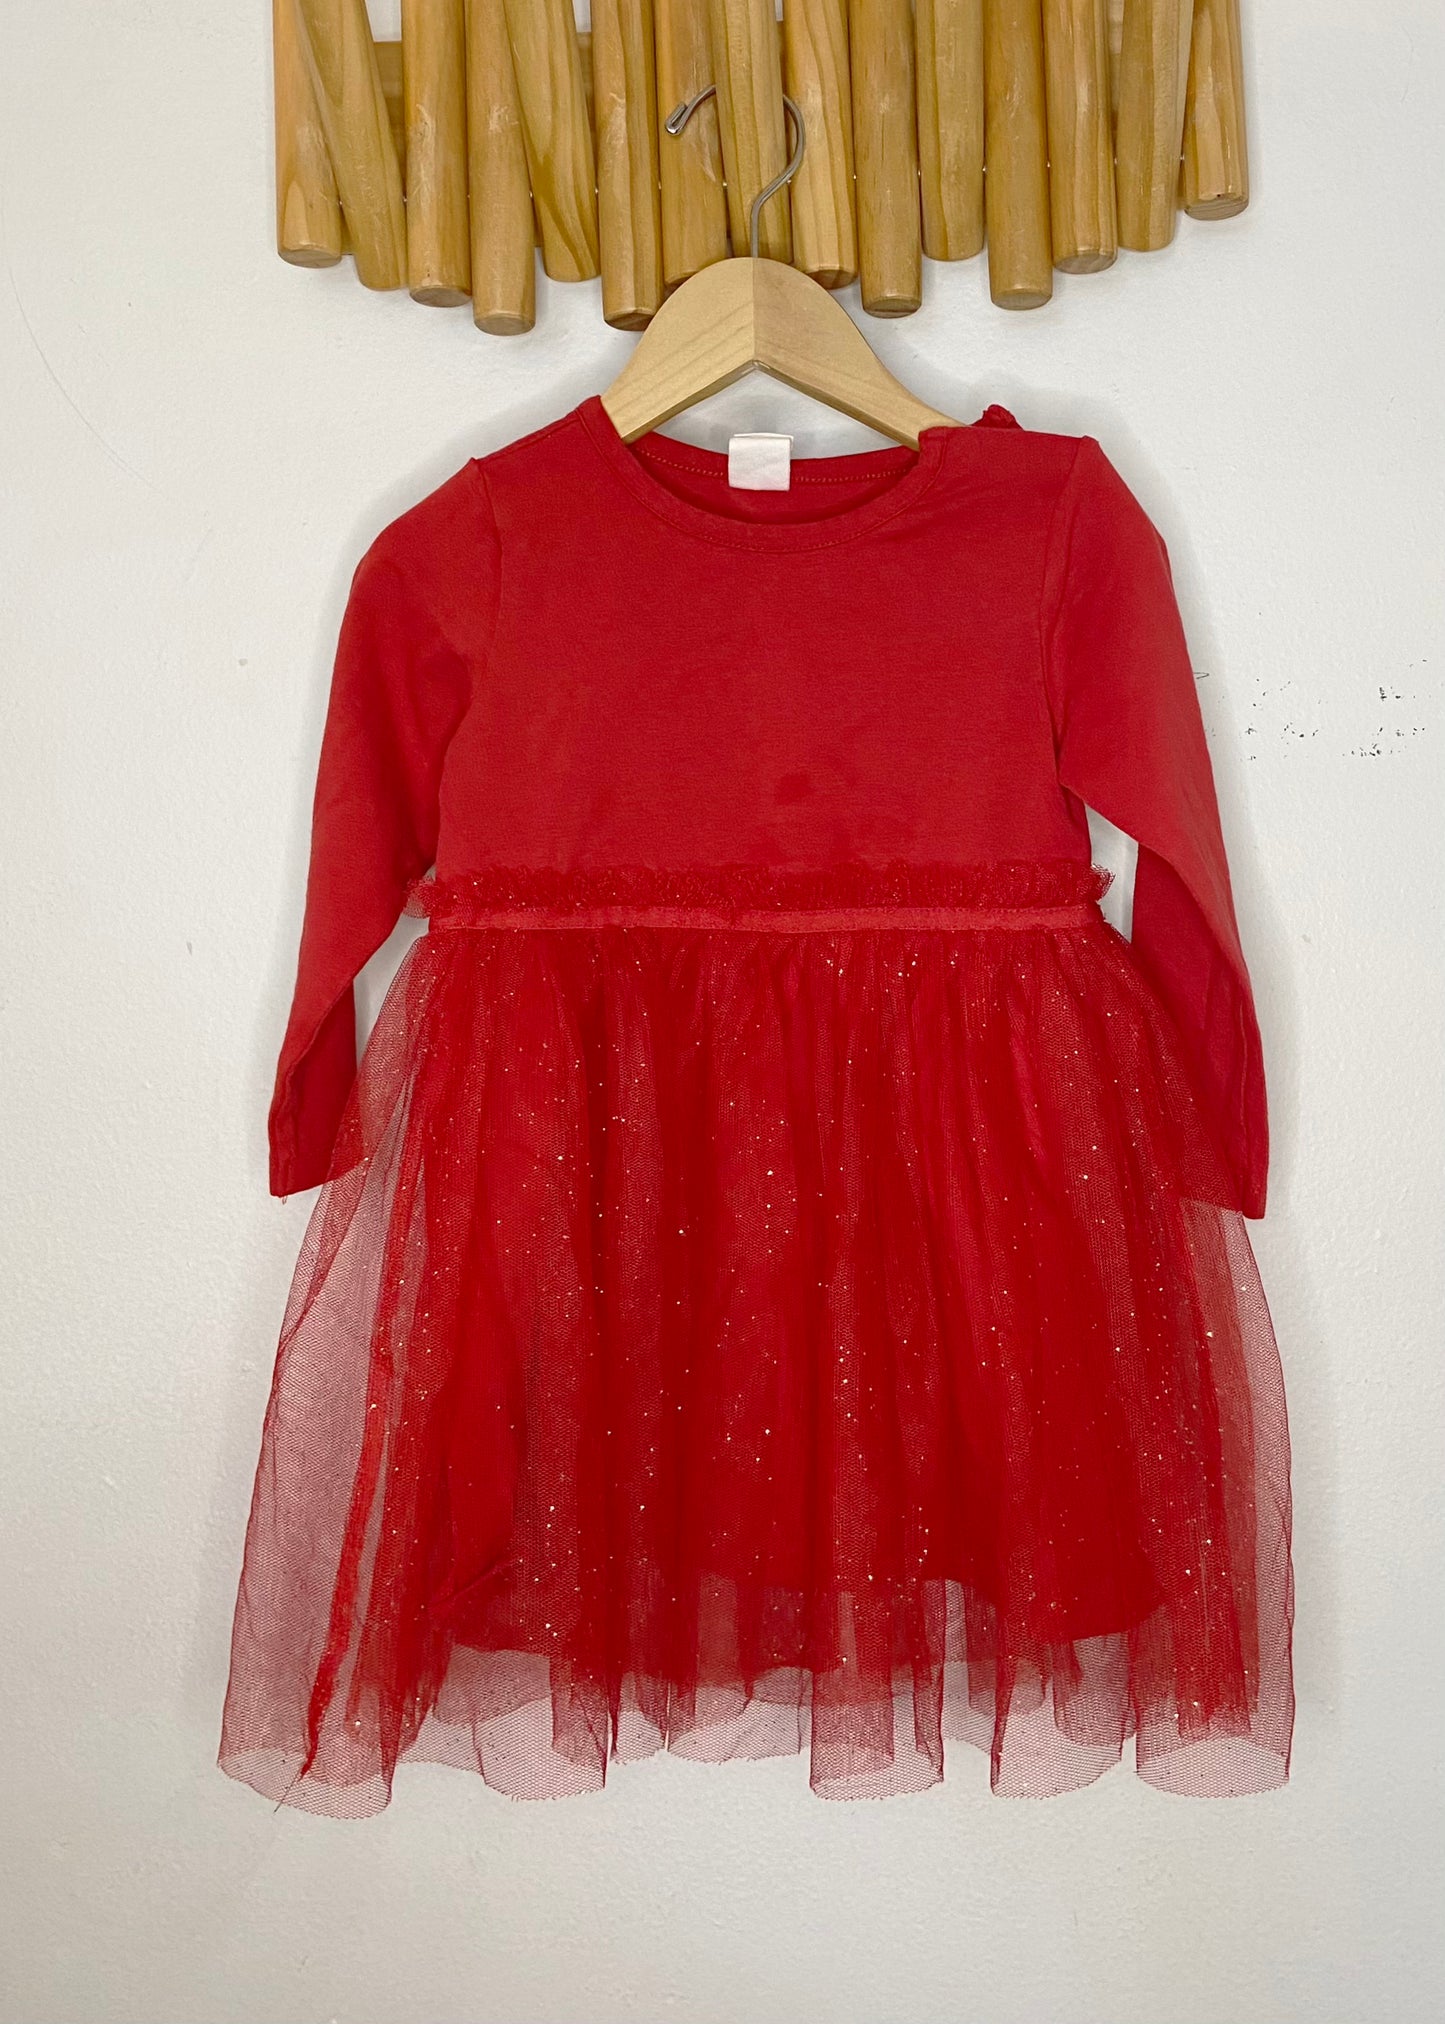 Red tutu dress 12-18m